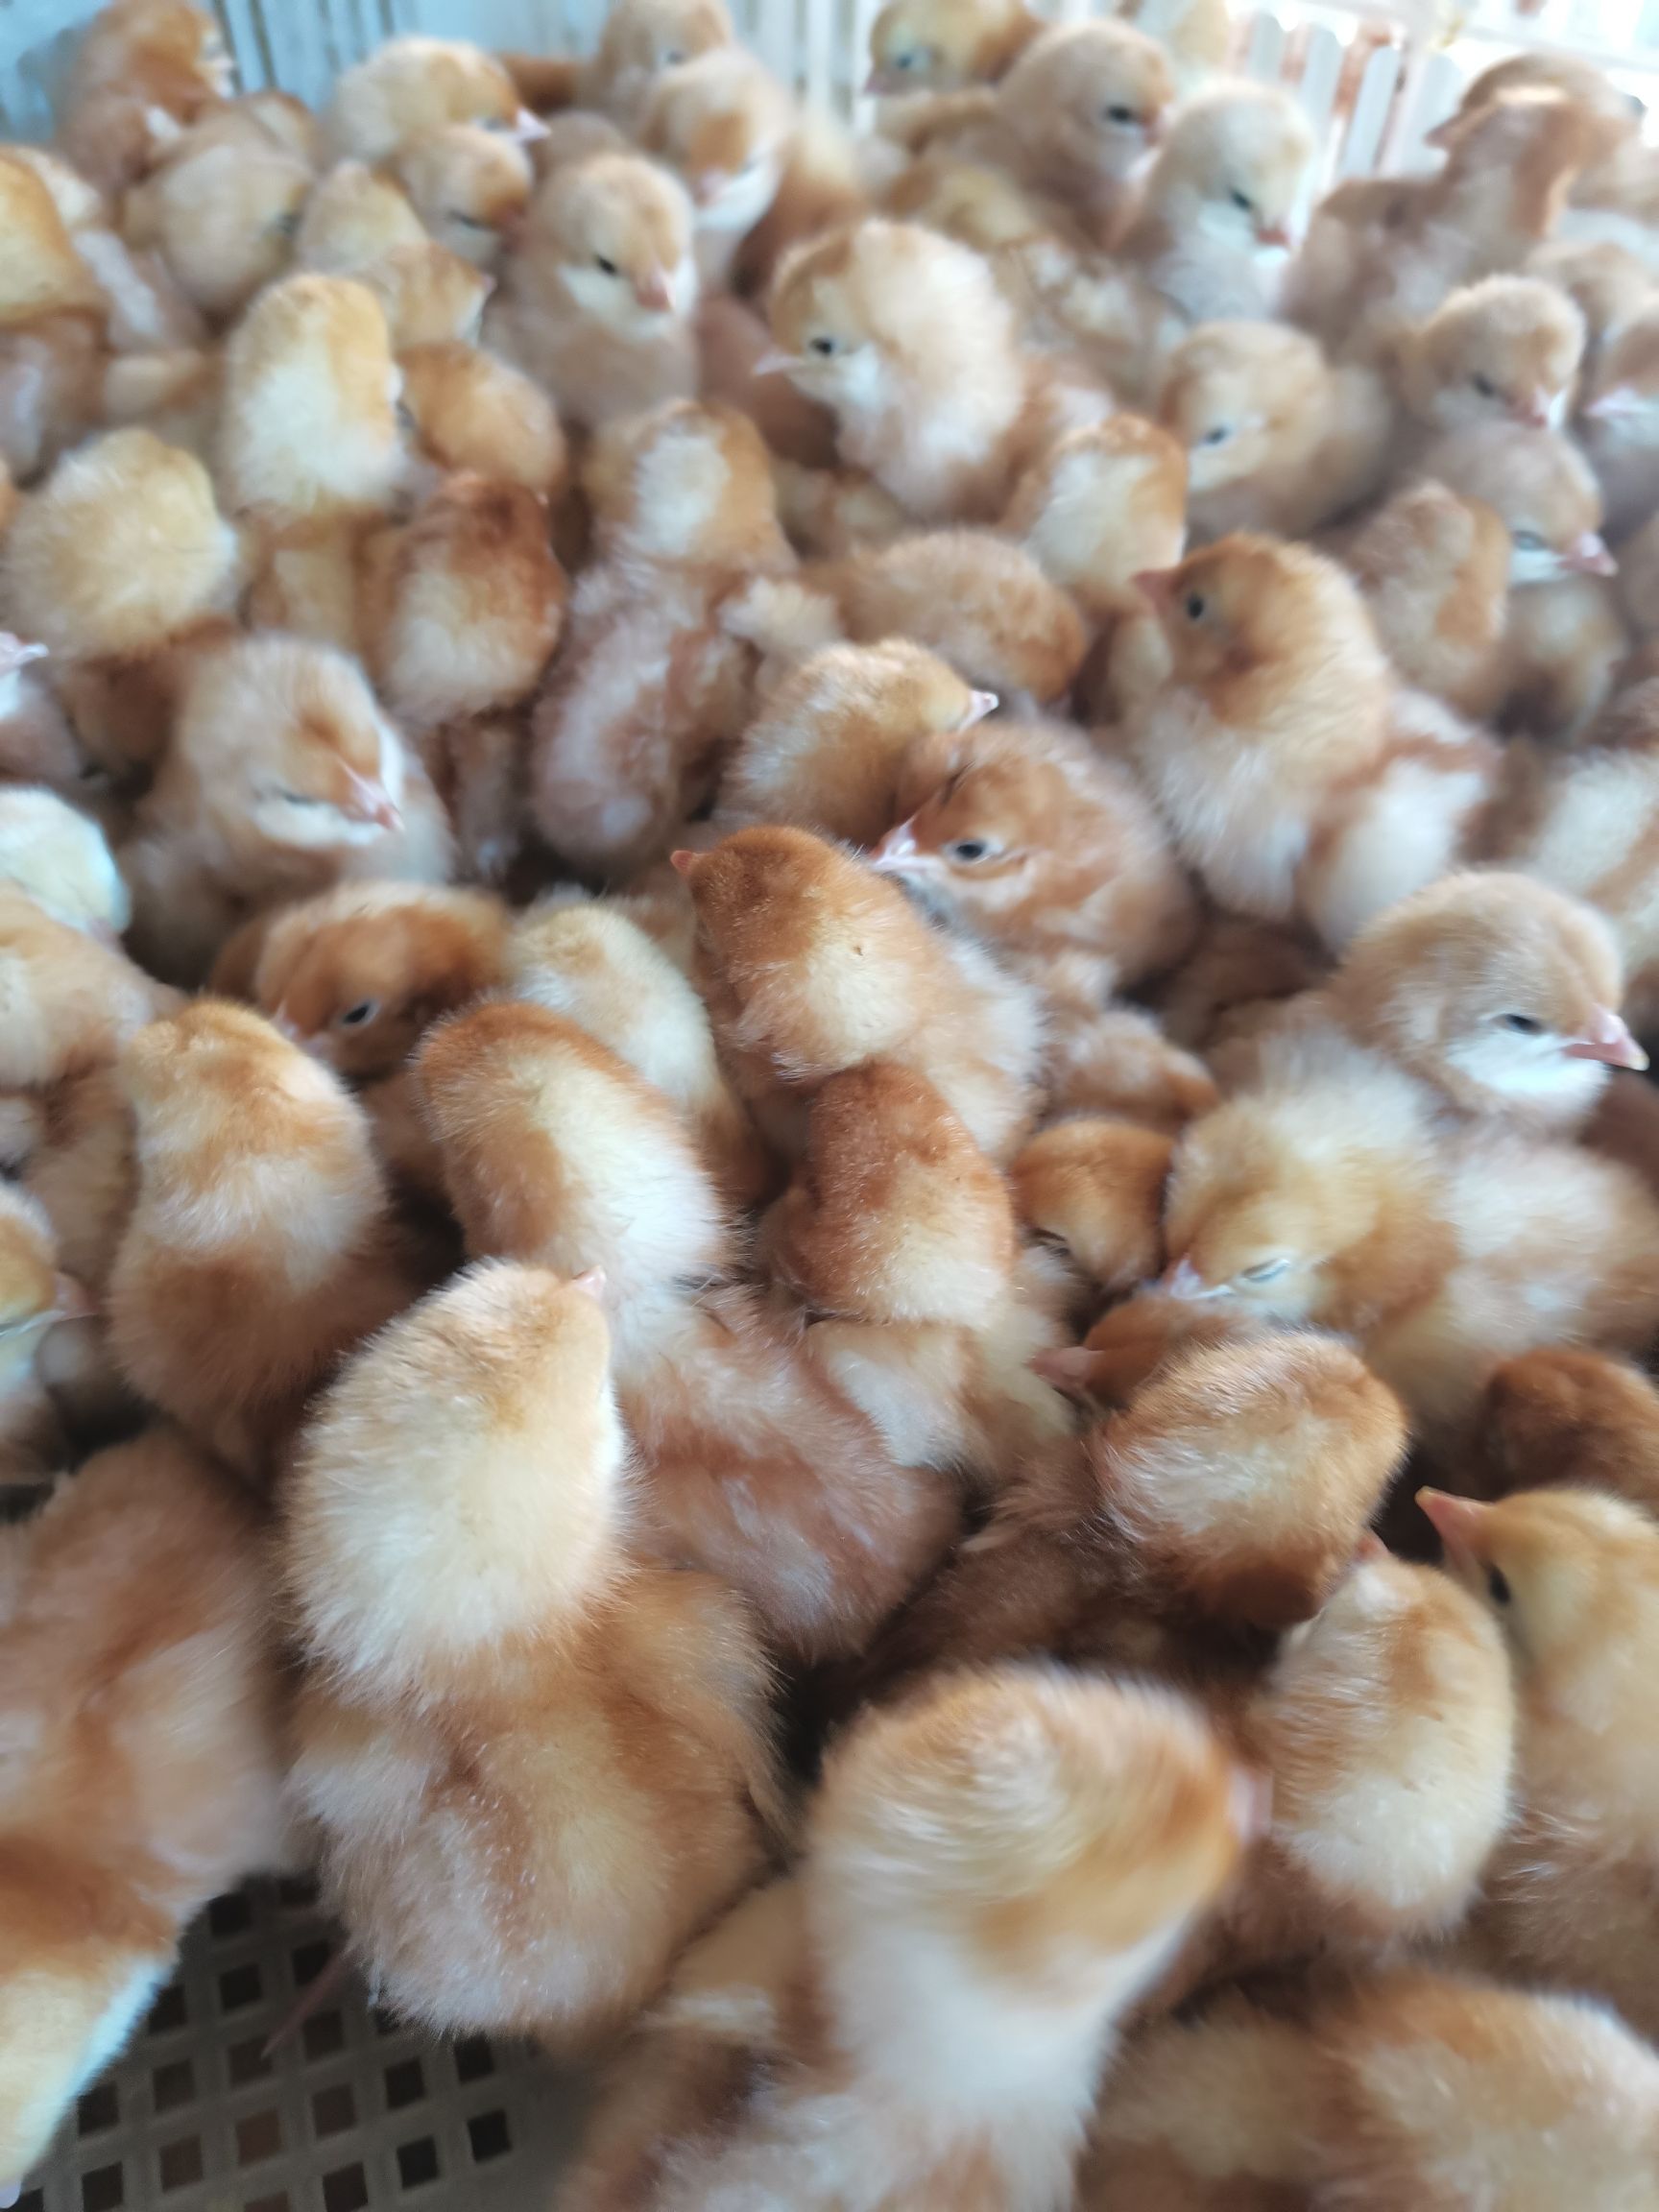 孵化场直销海兰褐蛋鸡苗,质量保证产蛋率高